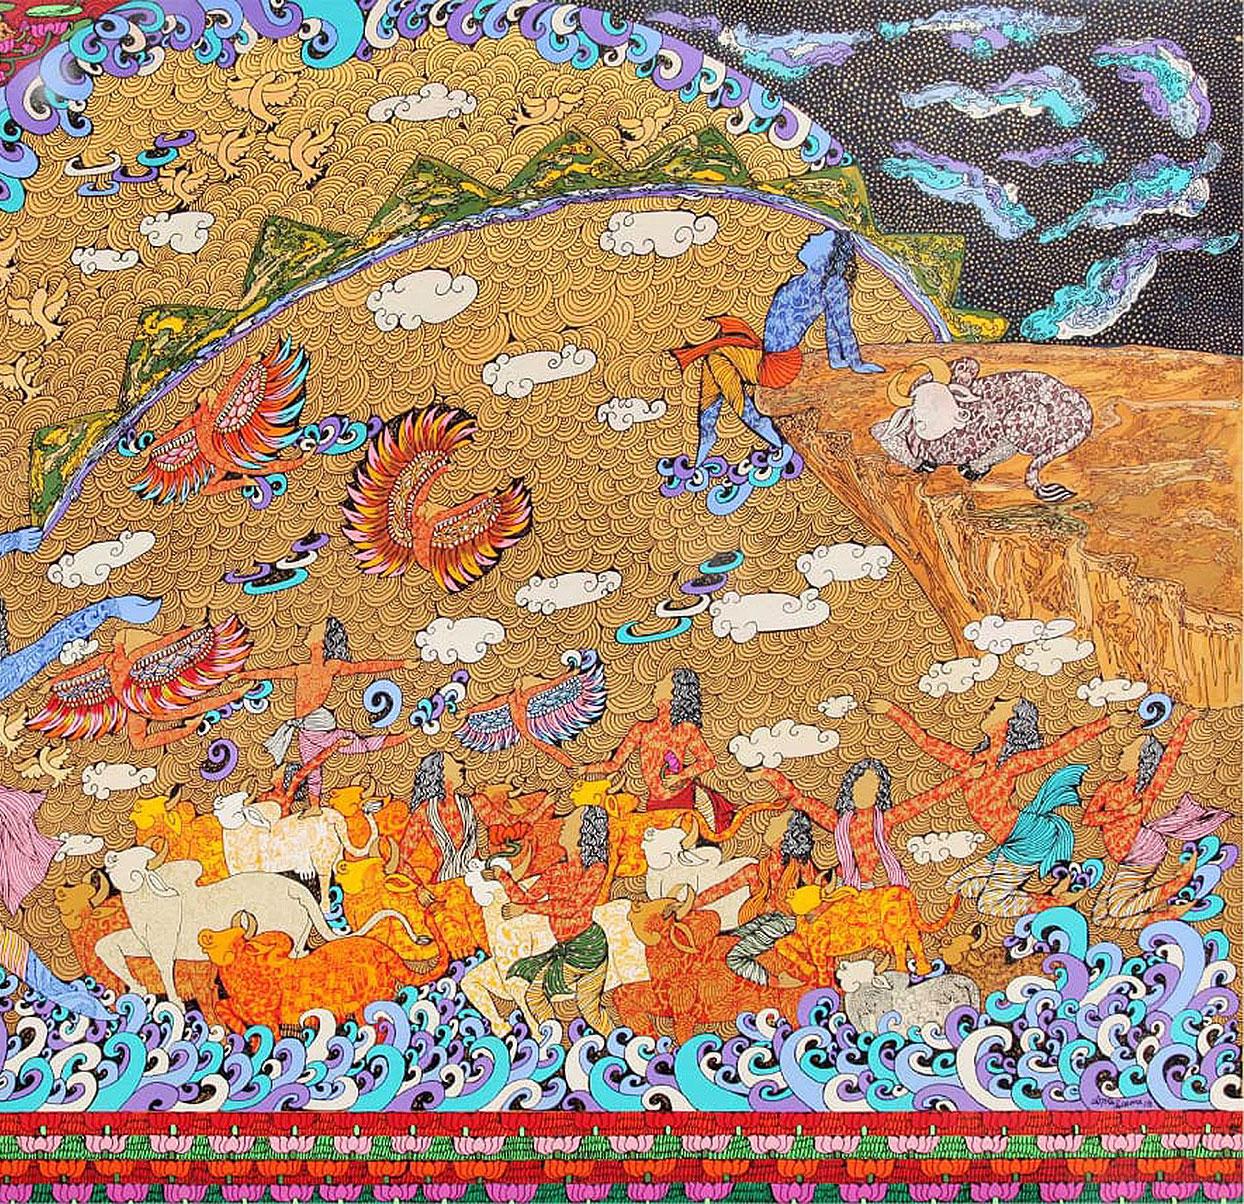 Seema Kohli - Krishna- Krishna Rasa - 48 x 72 Zoll (ungerahmtes Format)
Acryl und Tinte auf Leinwand mit 24 Karat Blattgold und Silber
Einschließlich der Lieferung in hängefertiger Form.

Seema Kohlis Werke offenbaren eine Behauptung weiblicher